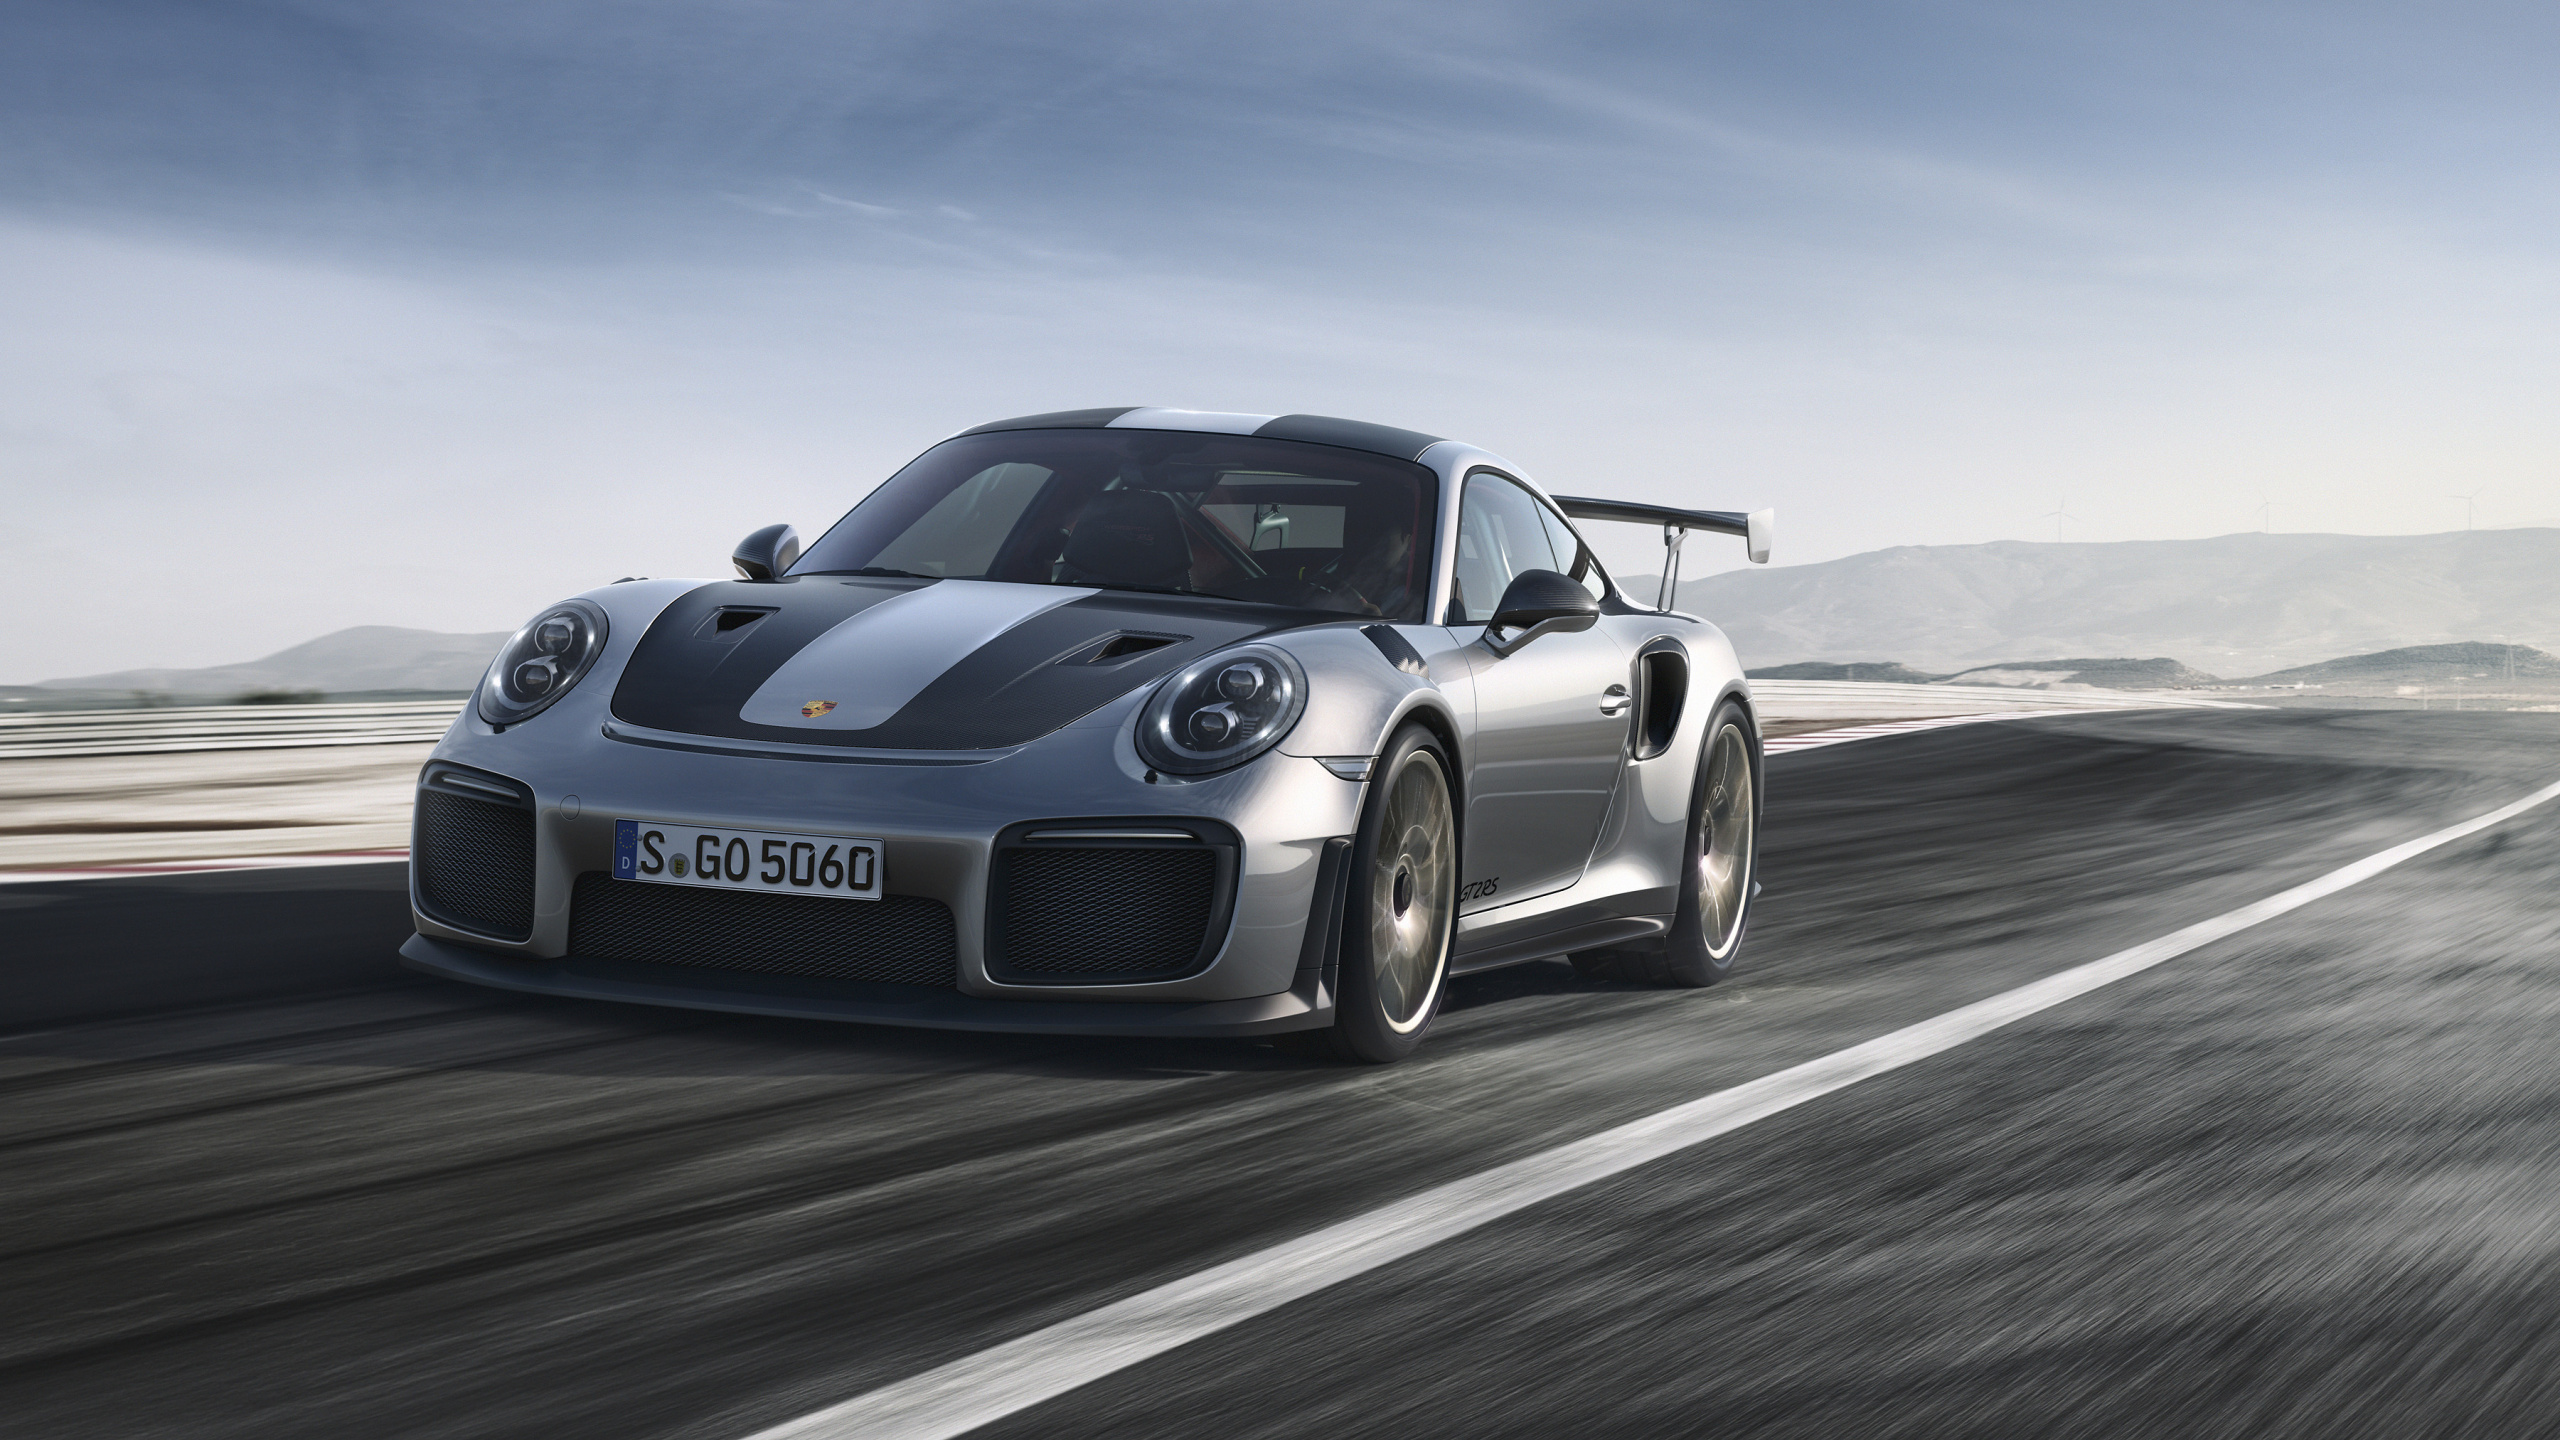 Schwarzer Porsche 911 Unterwegs. Wallpaper in 2560x1440 Resolution